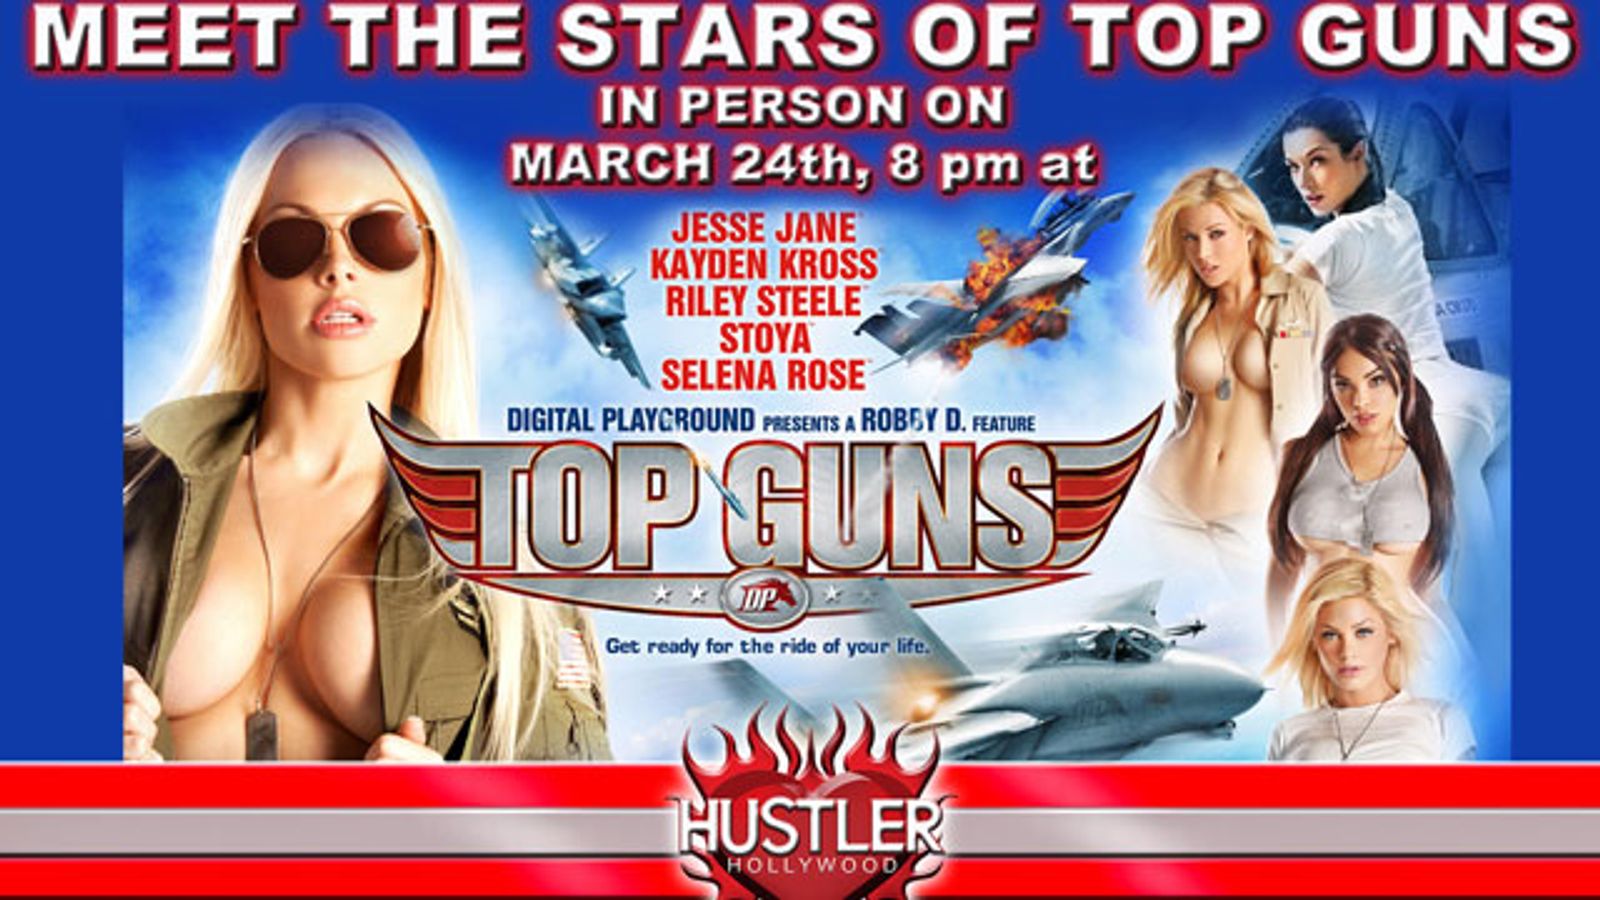 'Top Guns' Stars to Sign at Hustler Hollywood